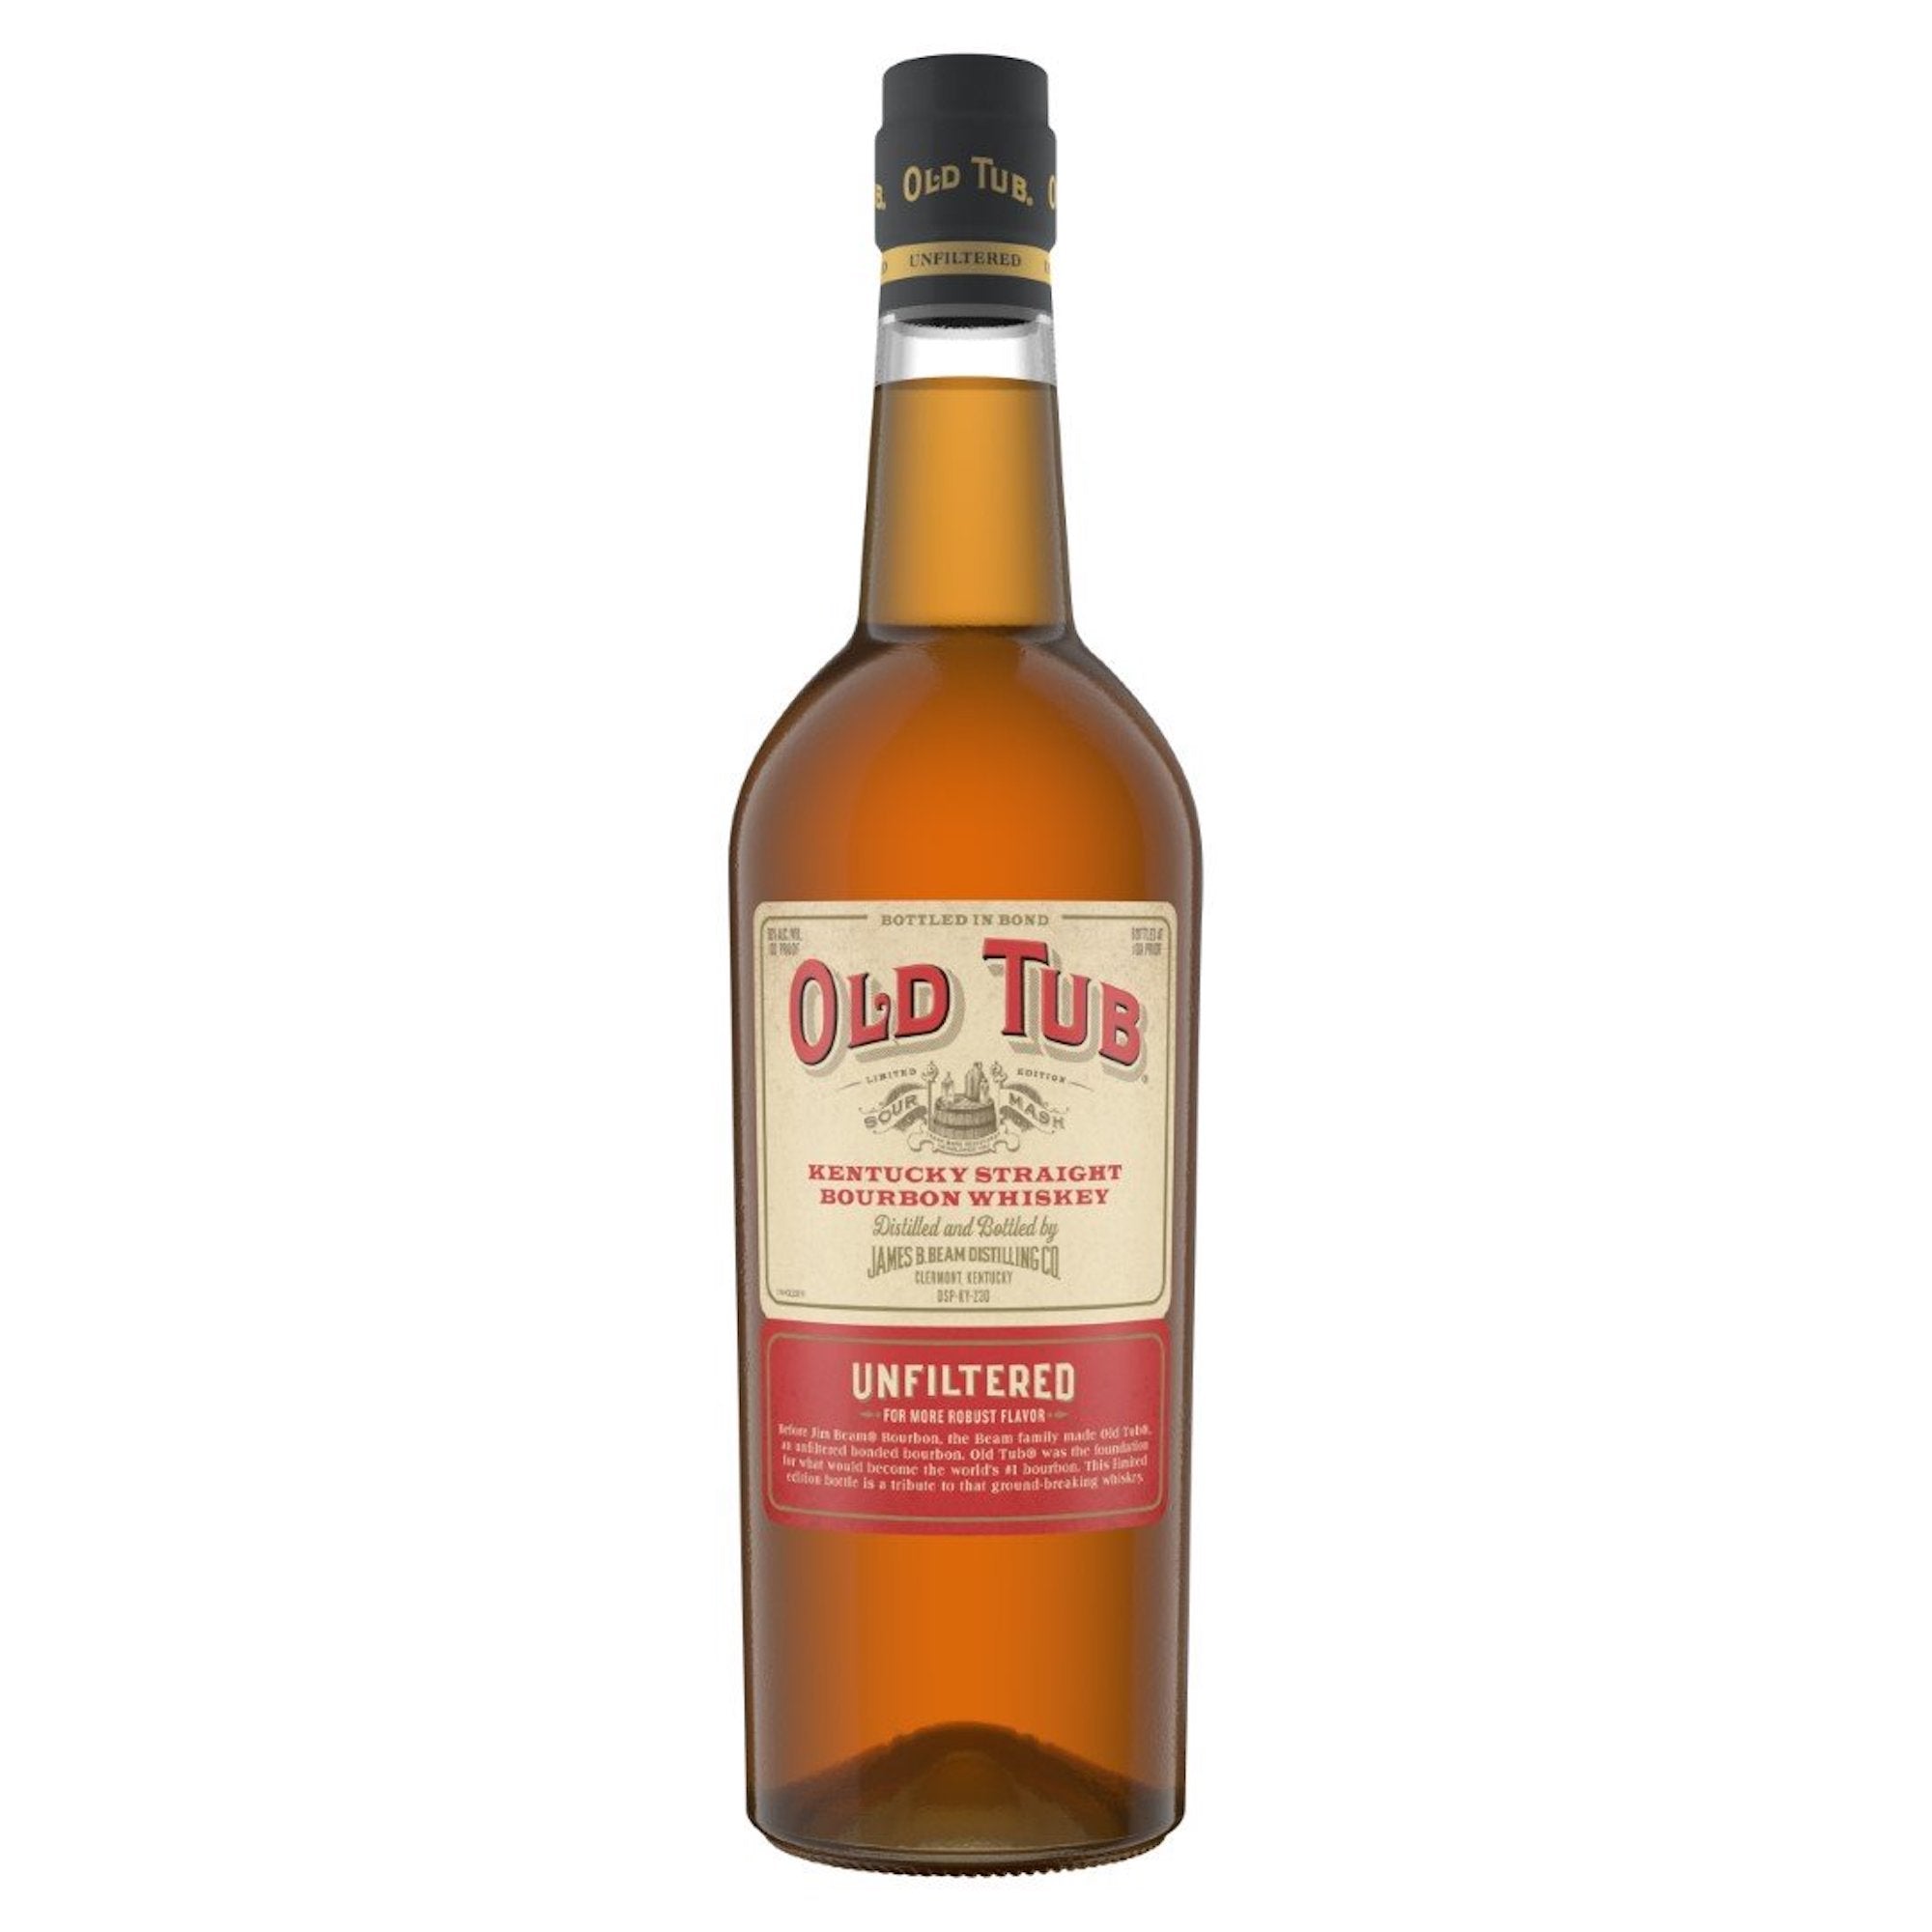 Old Tub Bottled in Bond Unfiltered Bourbon